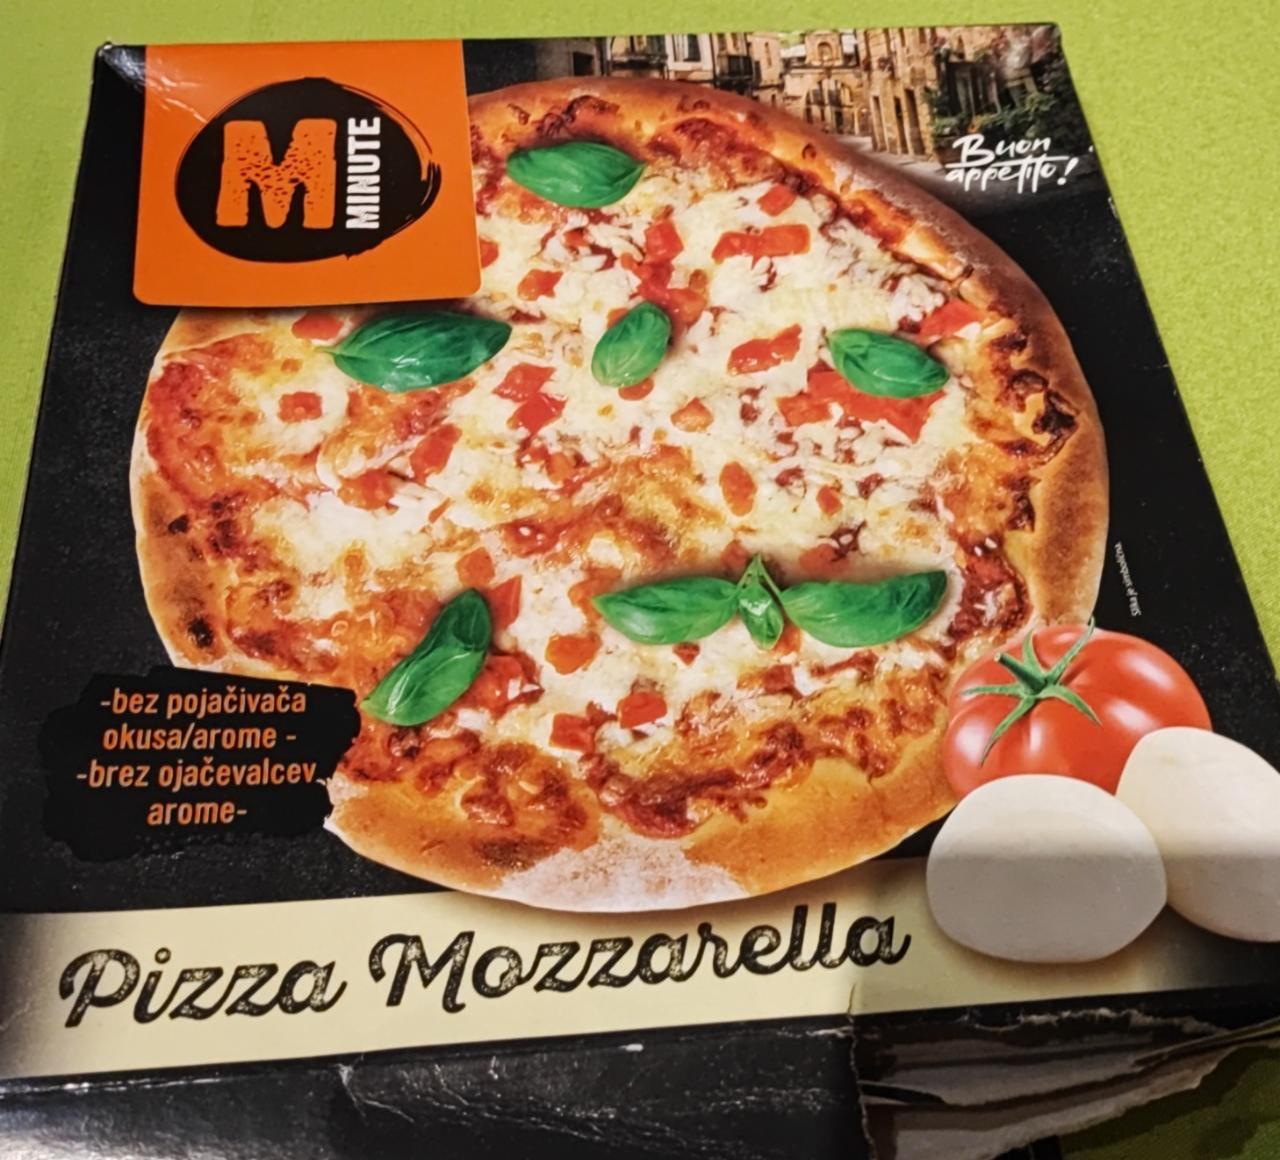 Képek - Pizza mozzarella Minute